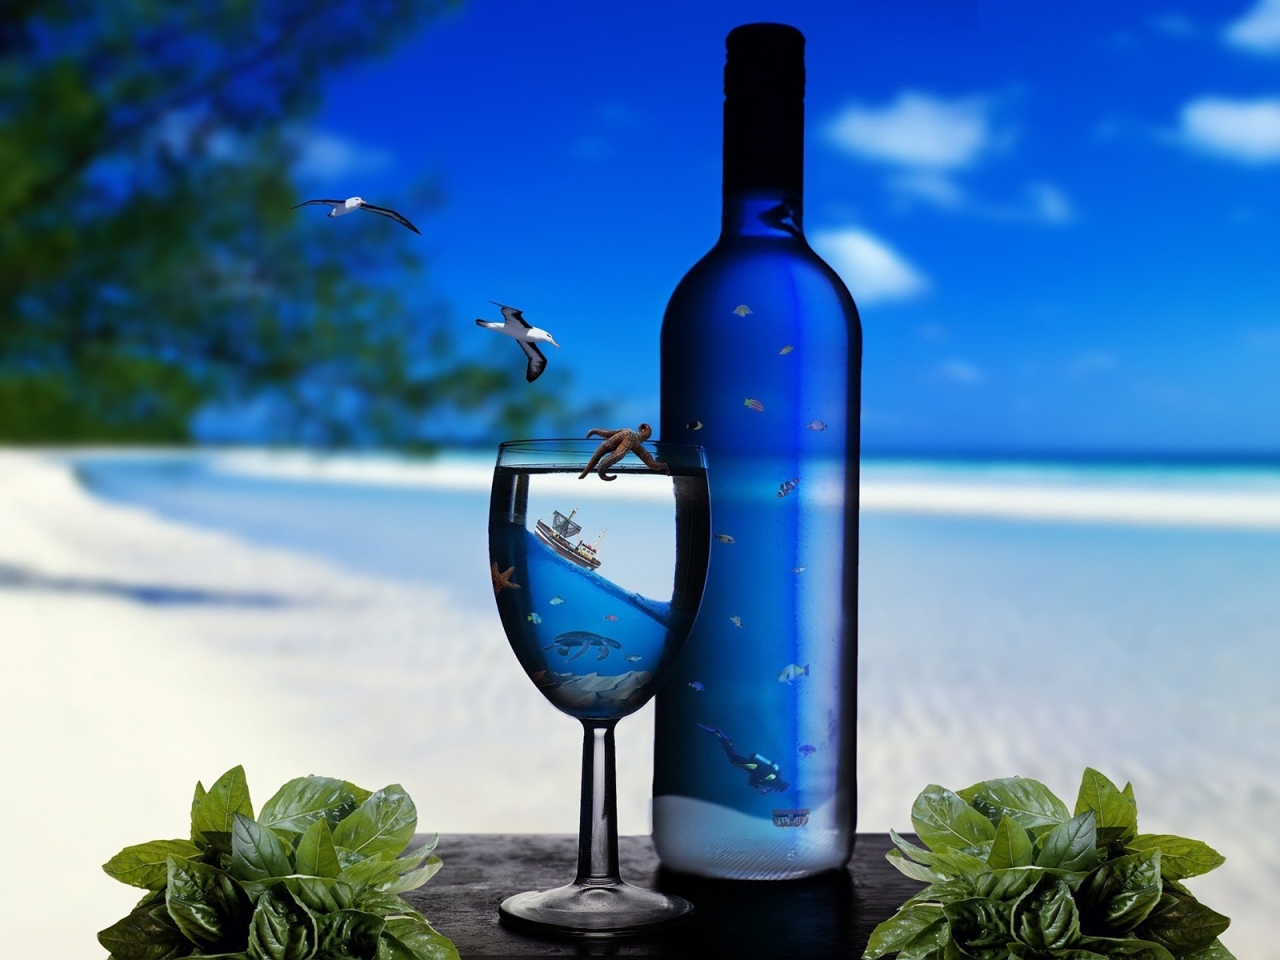 Ocean Glass Bottles for 1280 x 960 resolution